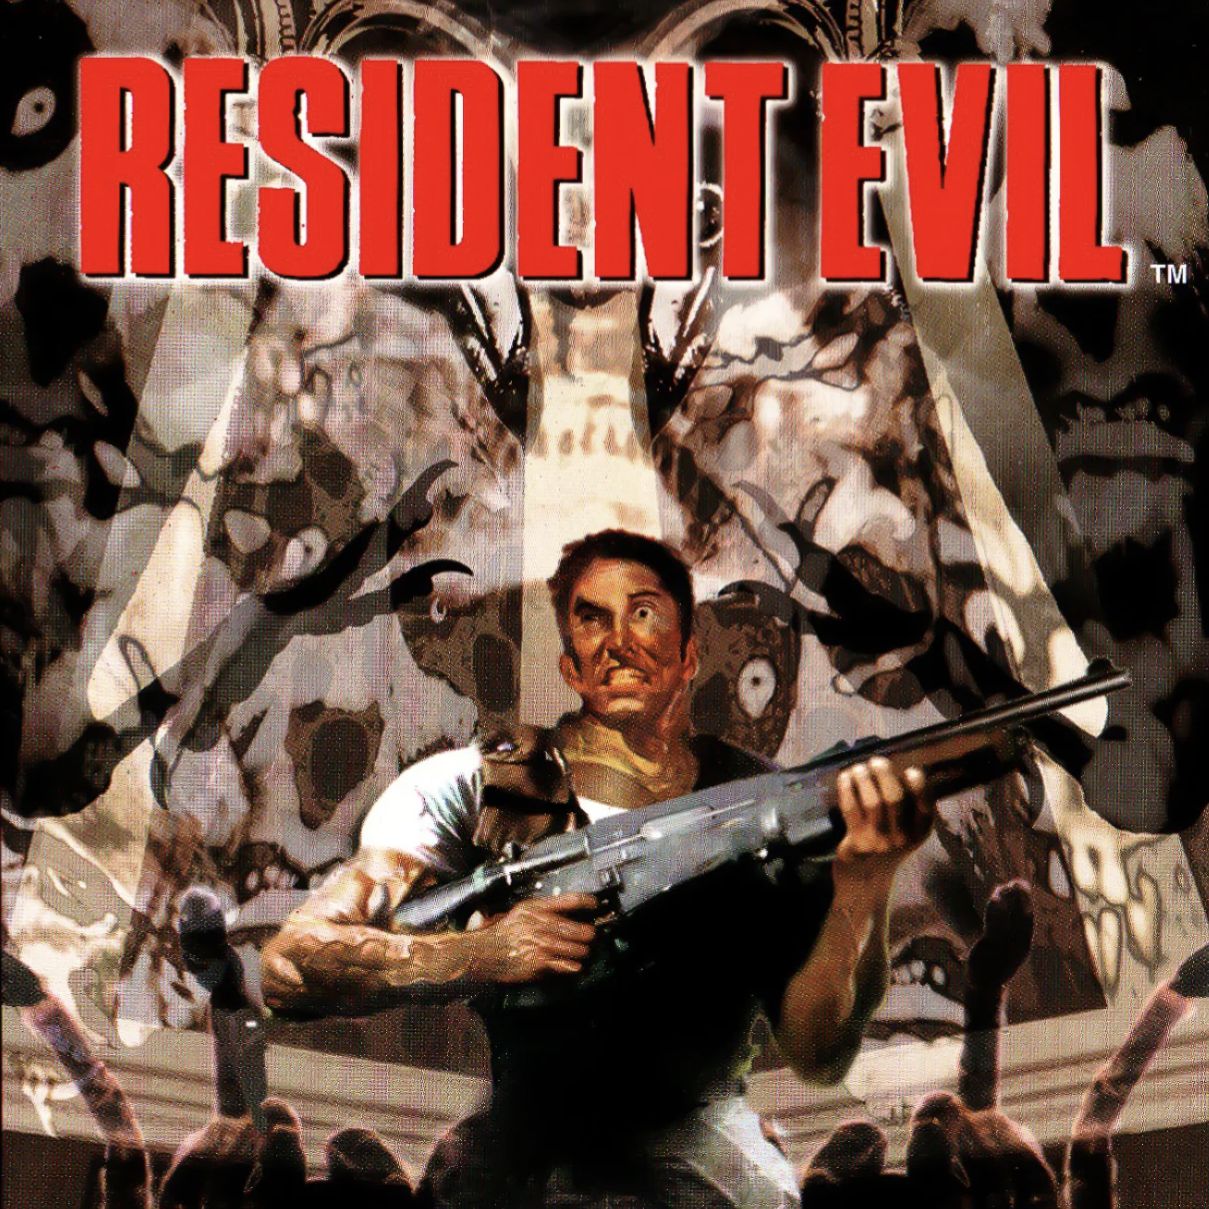 Radiant-Chris on X: RT @Yandere_Senpai_: Billions. Resident Evil 5 Remake  fan poster. #residentevil #residentevil5 #residentevil5remake #remake # remakes #res… / X